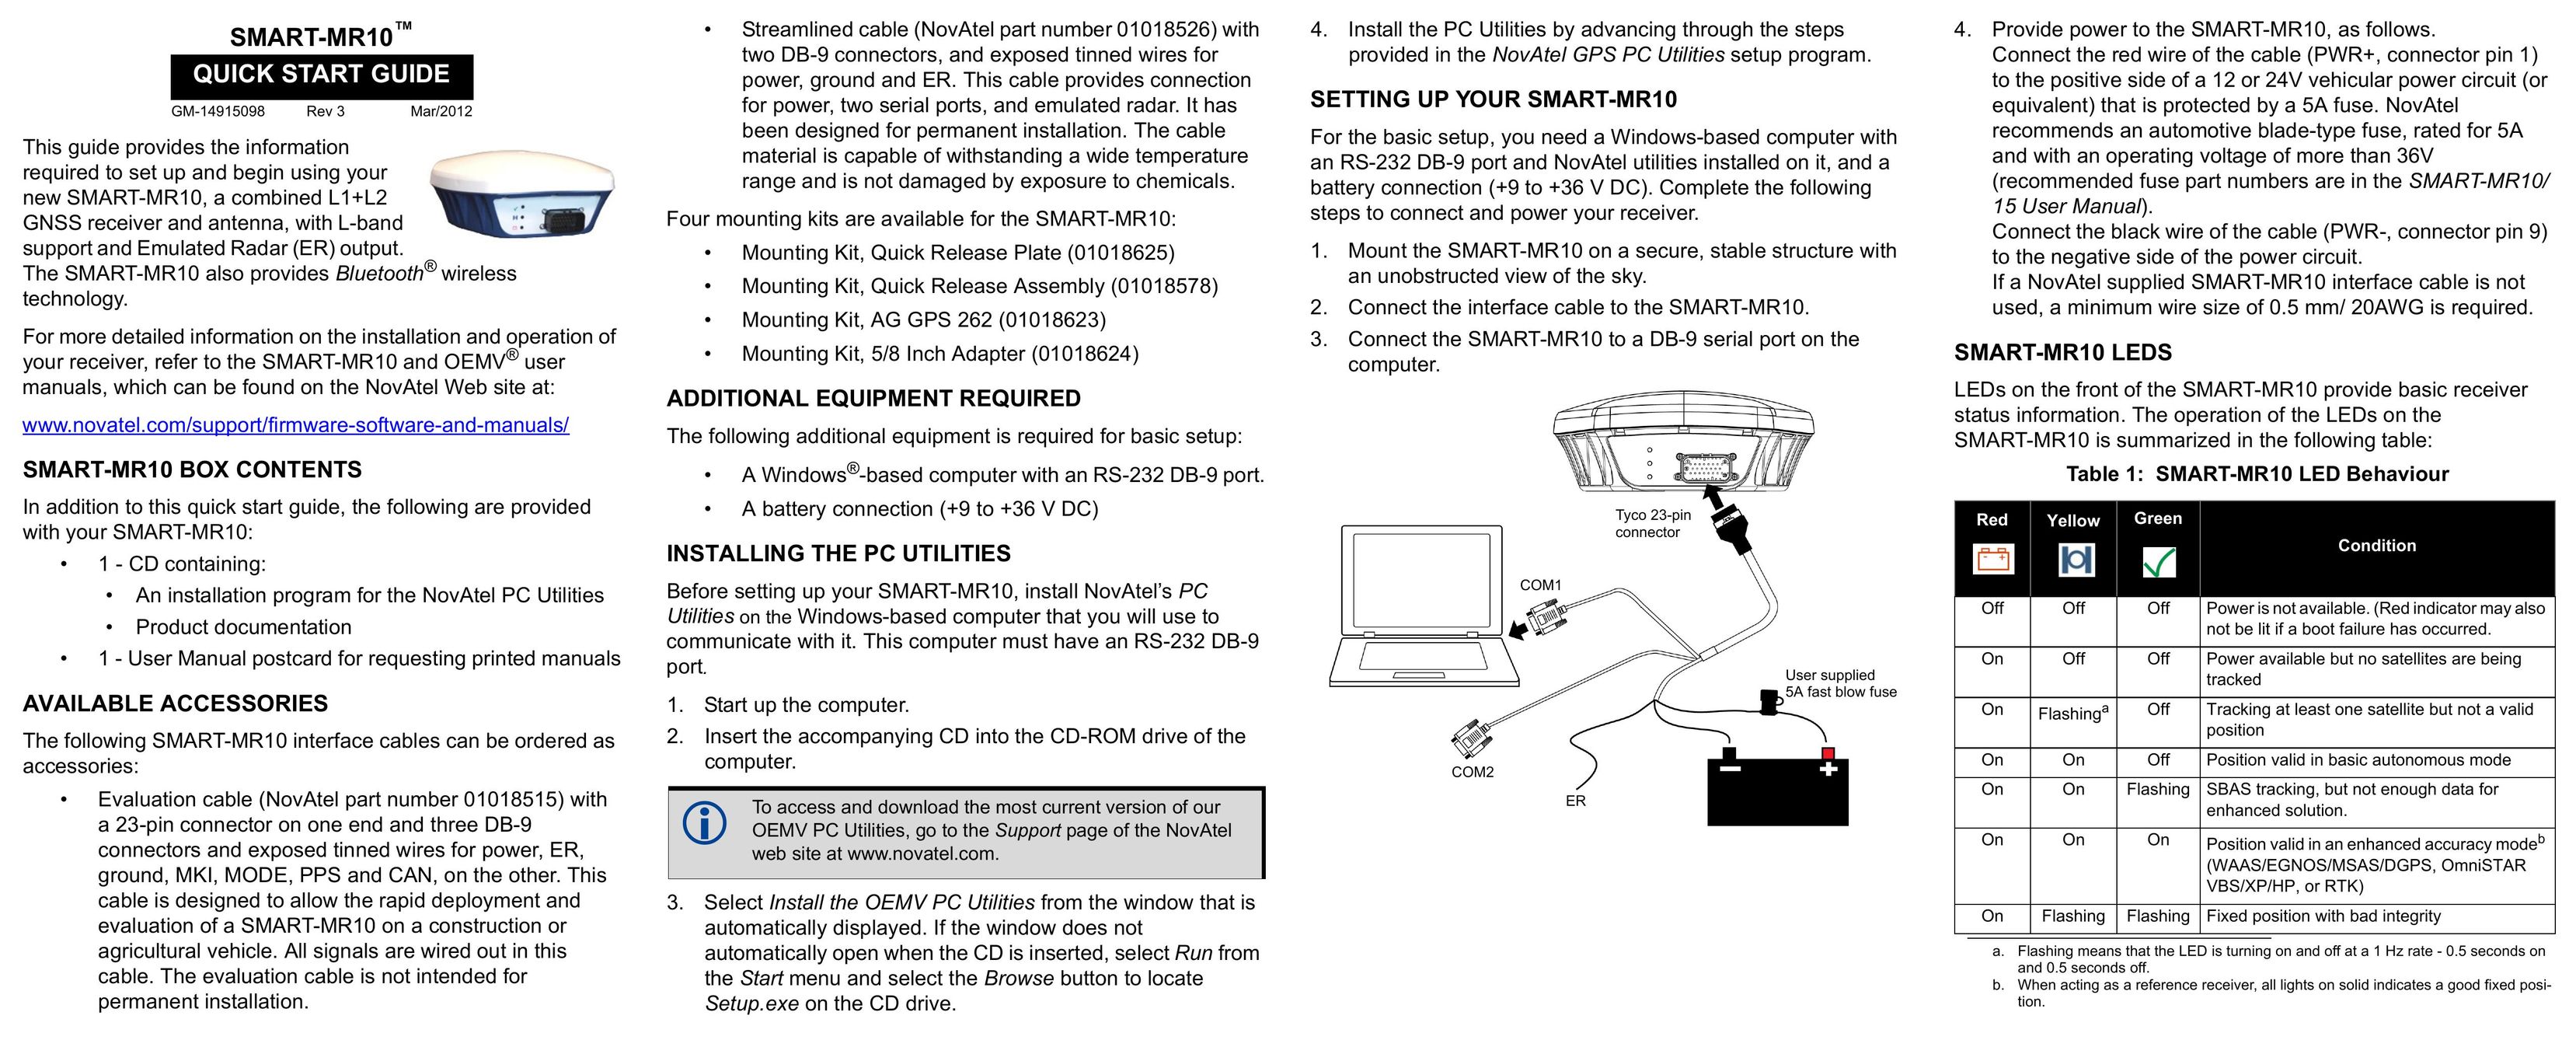 Novatel GM-14915098 Car Satellite TV System User Manual